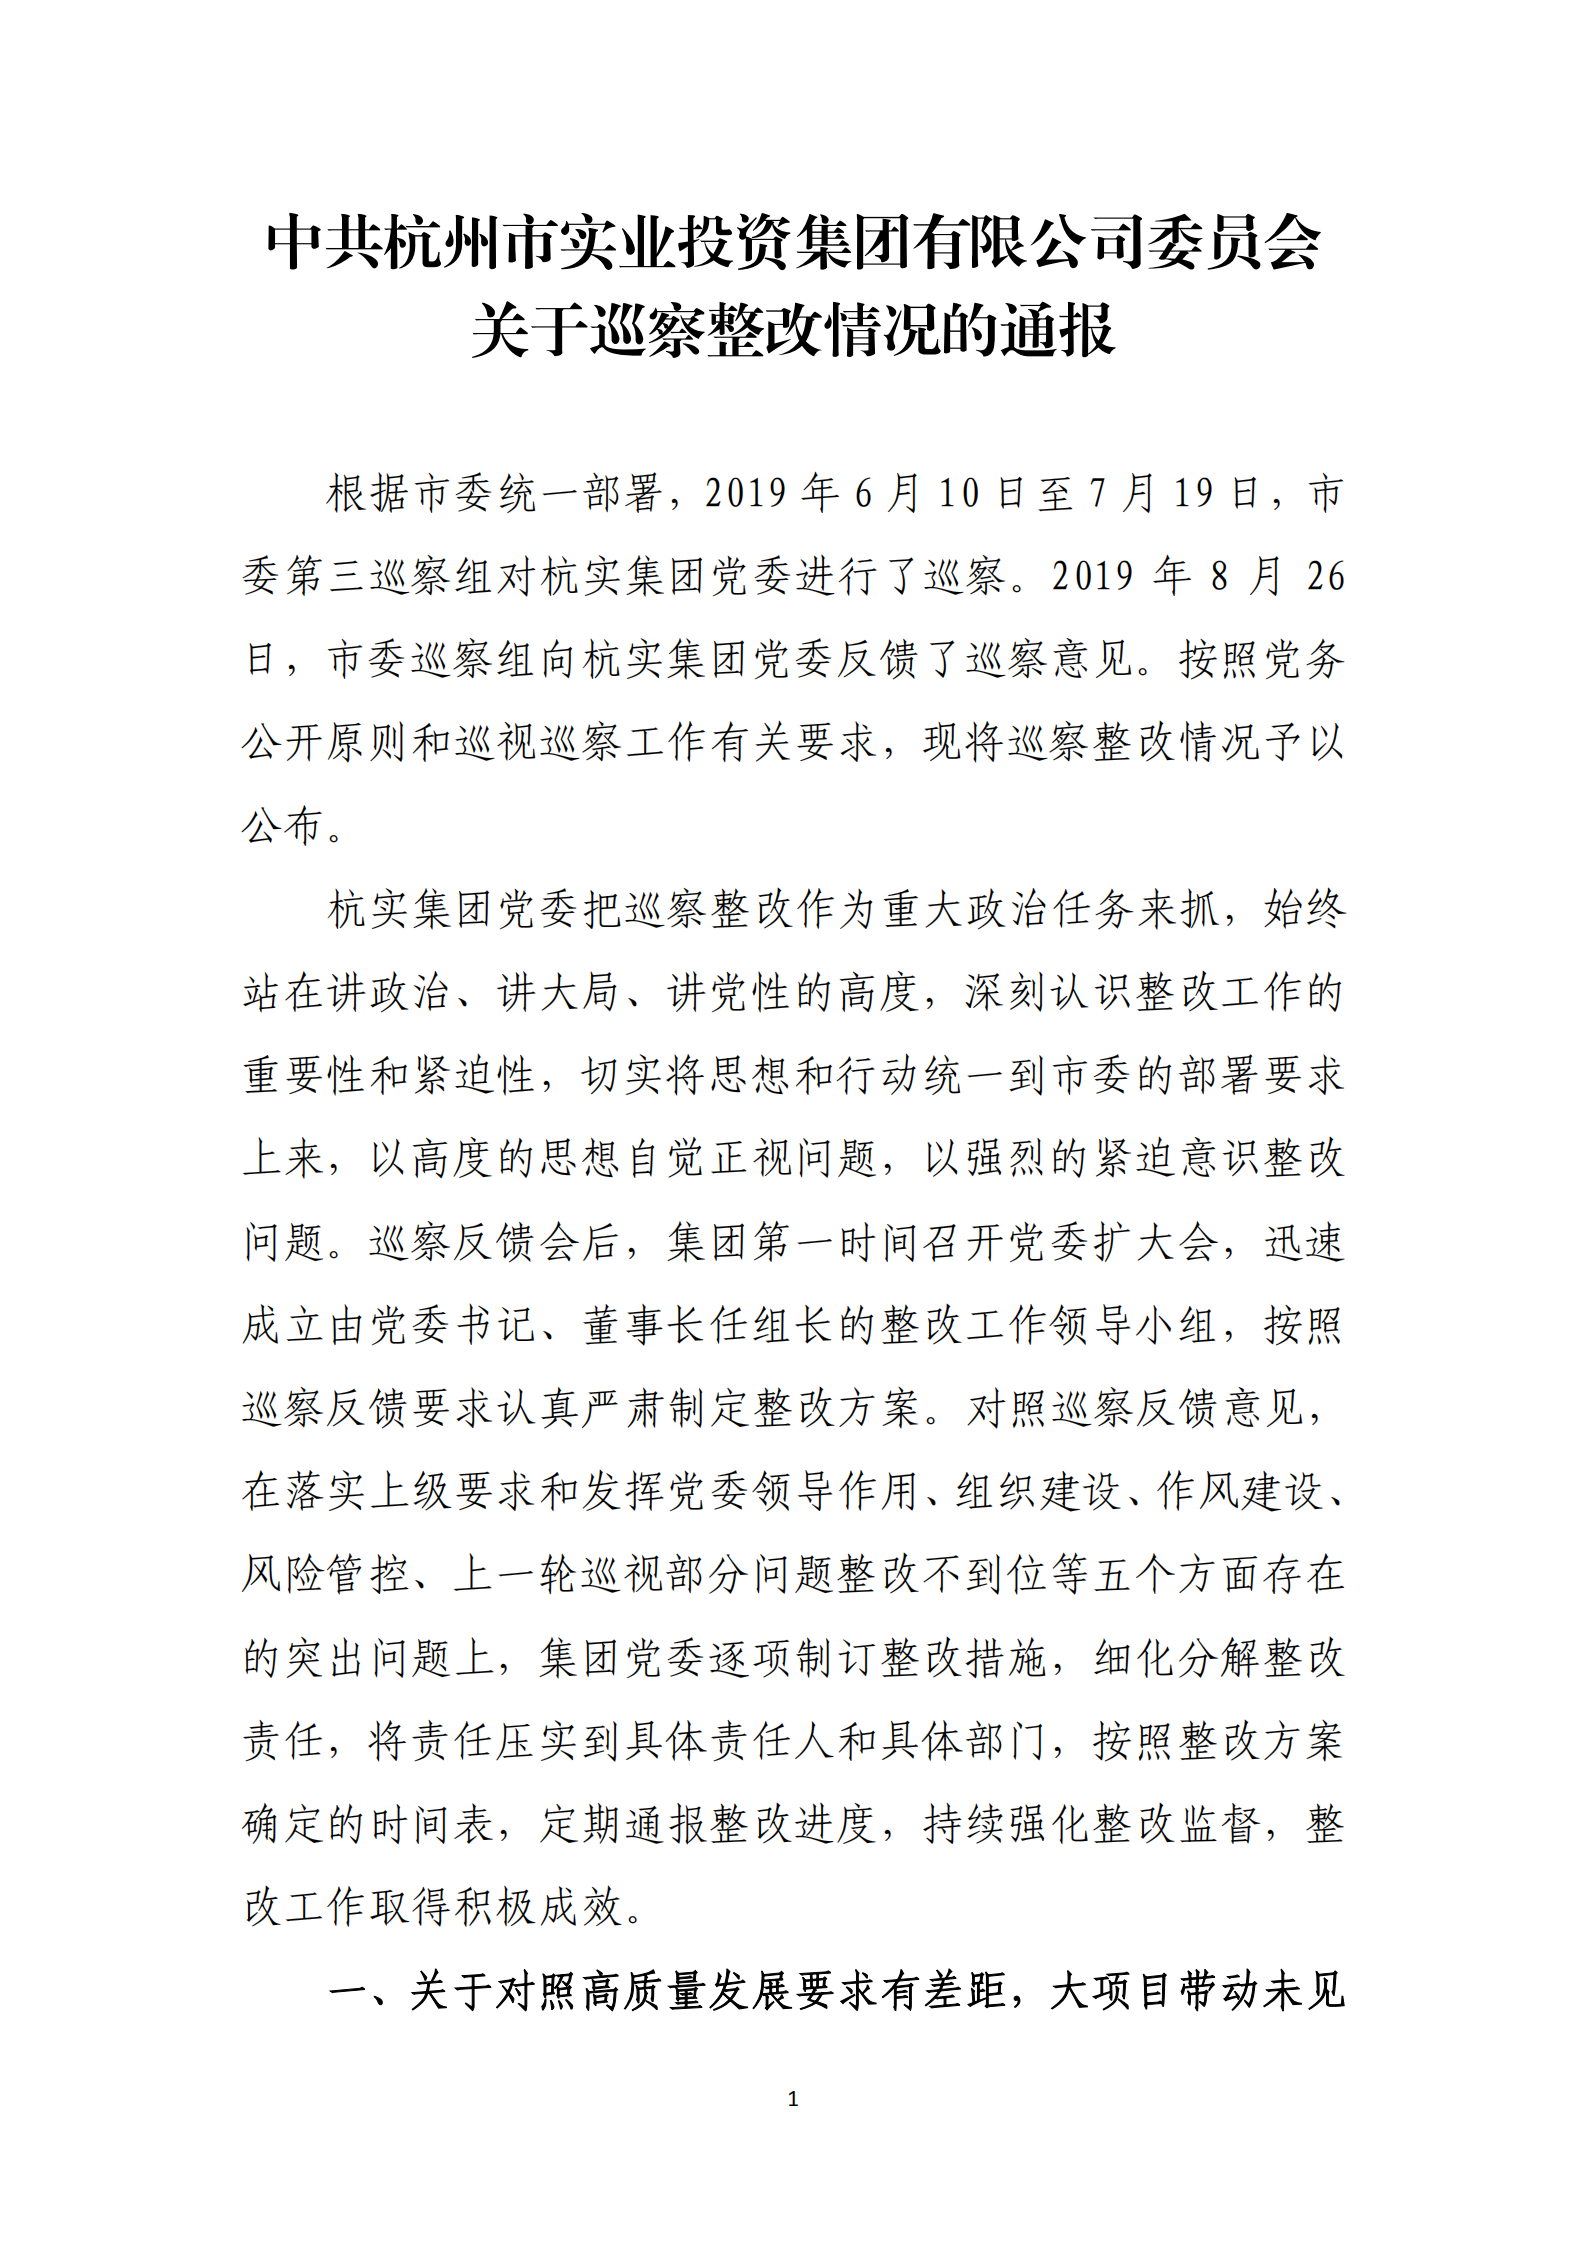 乐虎国际游戏官网党委关于巡察整改情况的通报_00.png